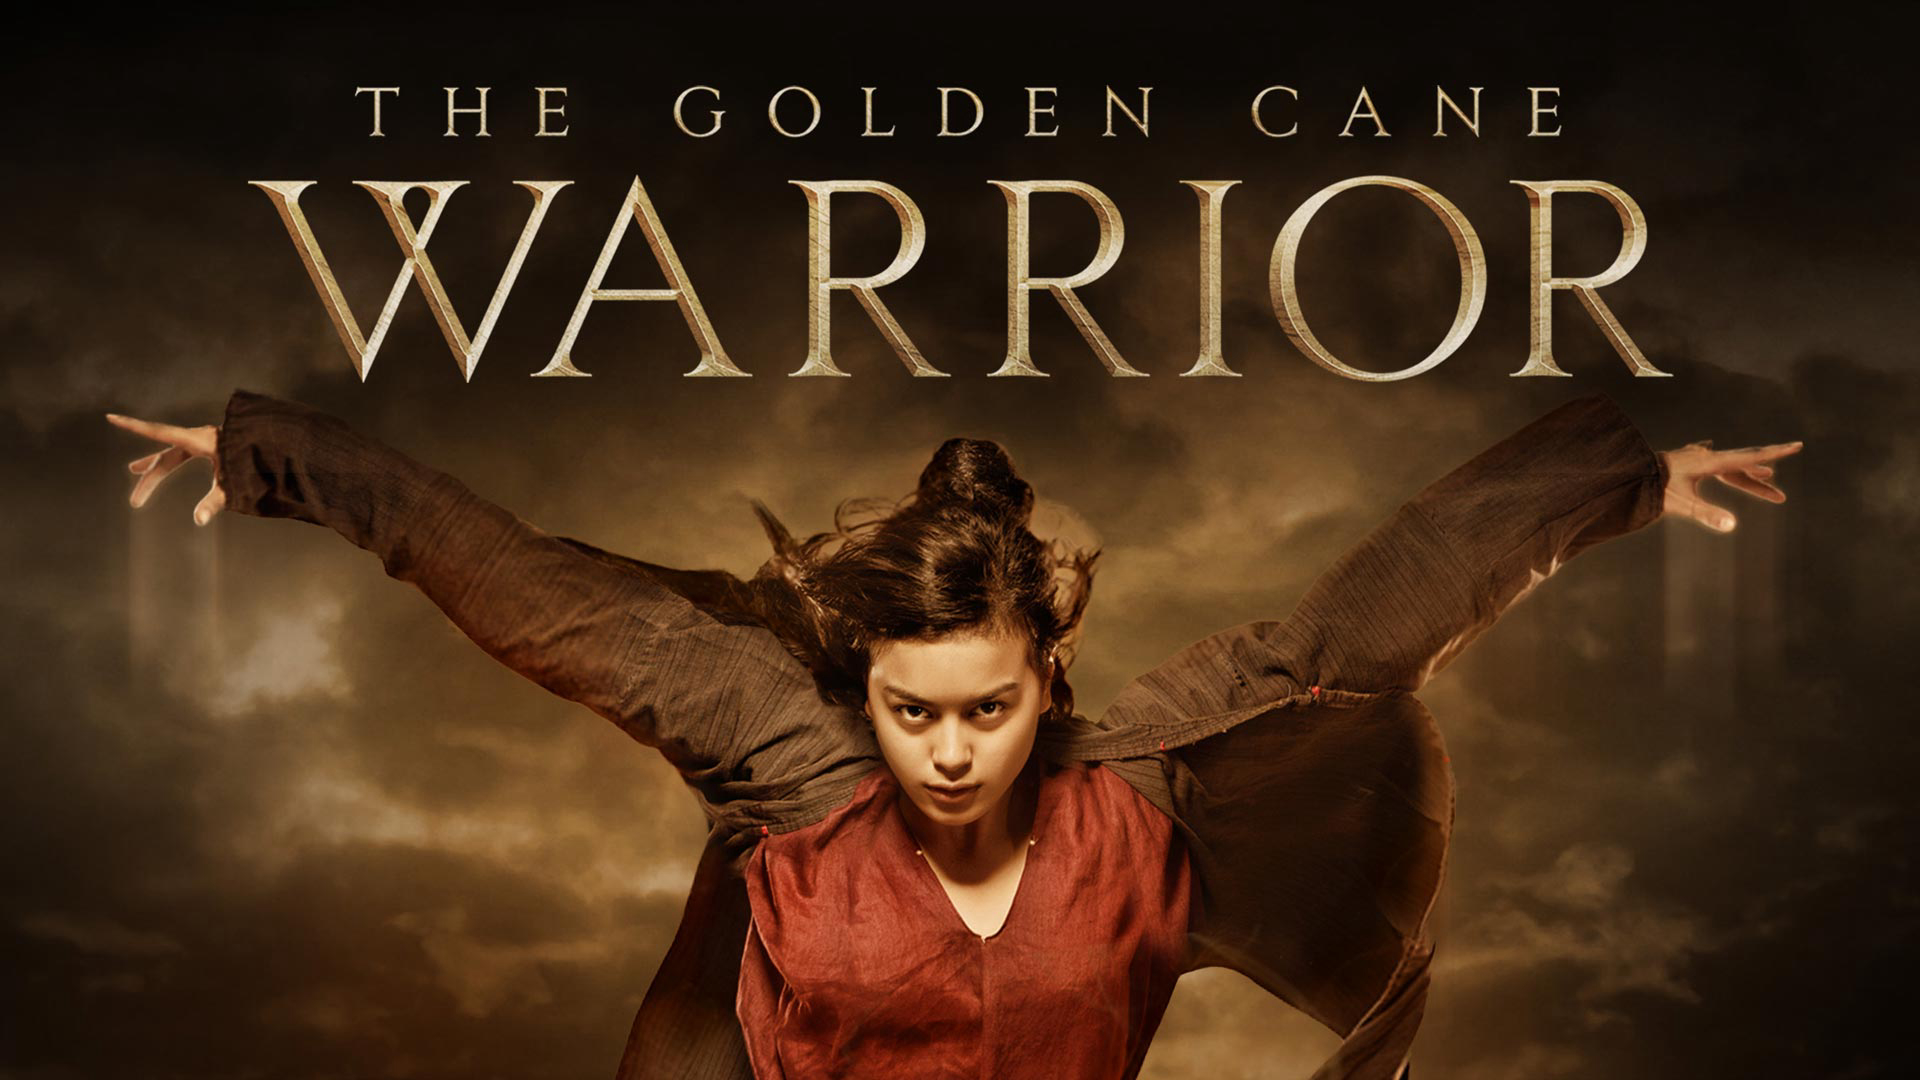 The Golden Cane Warrior - The Golden Cane Warrior (2014)